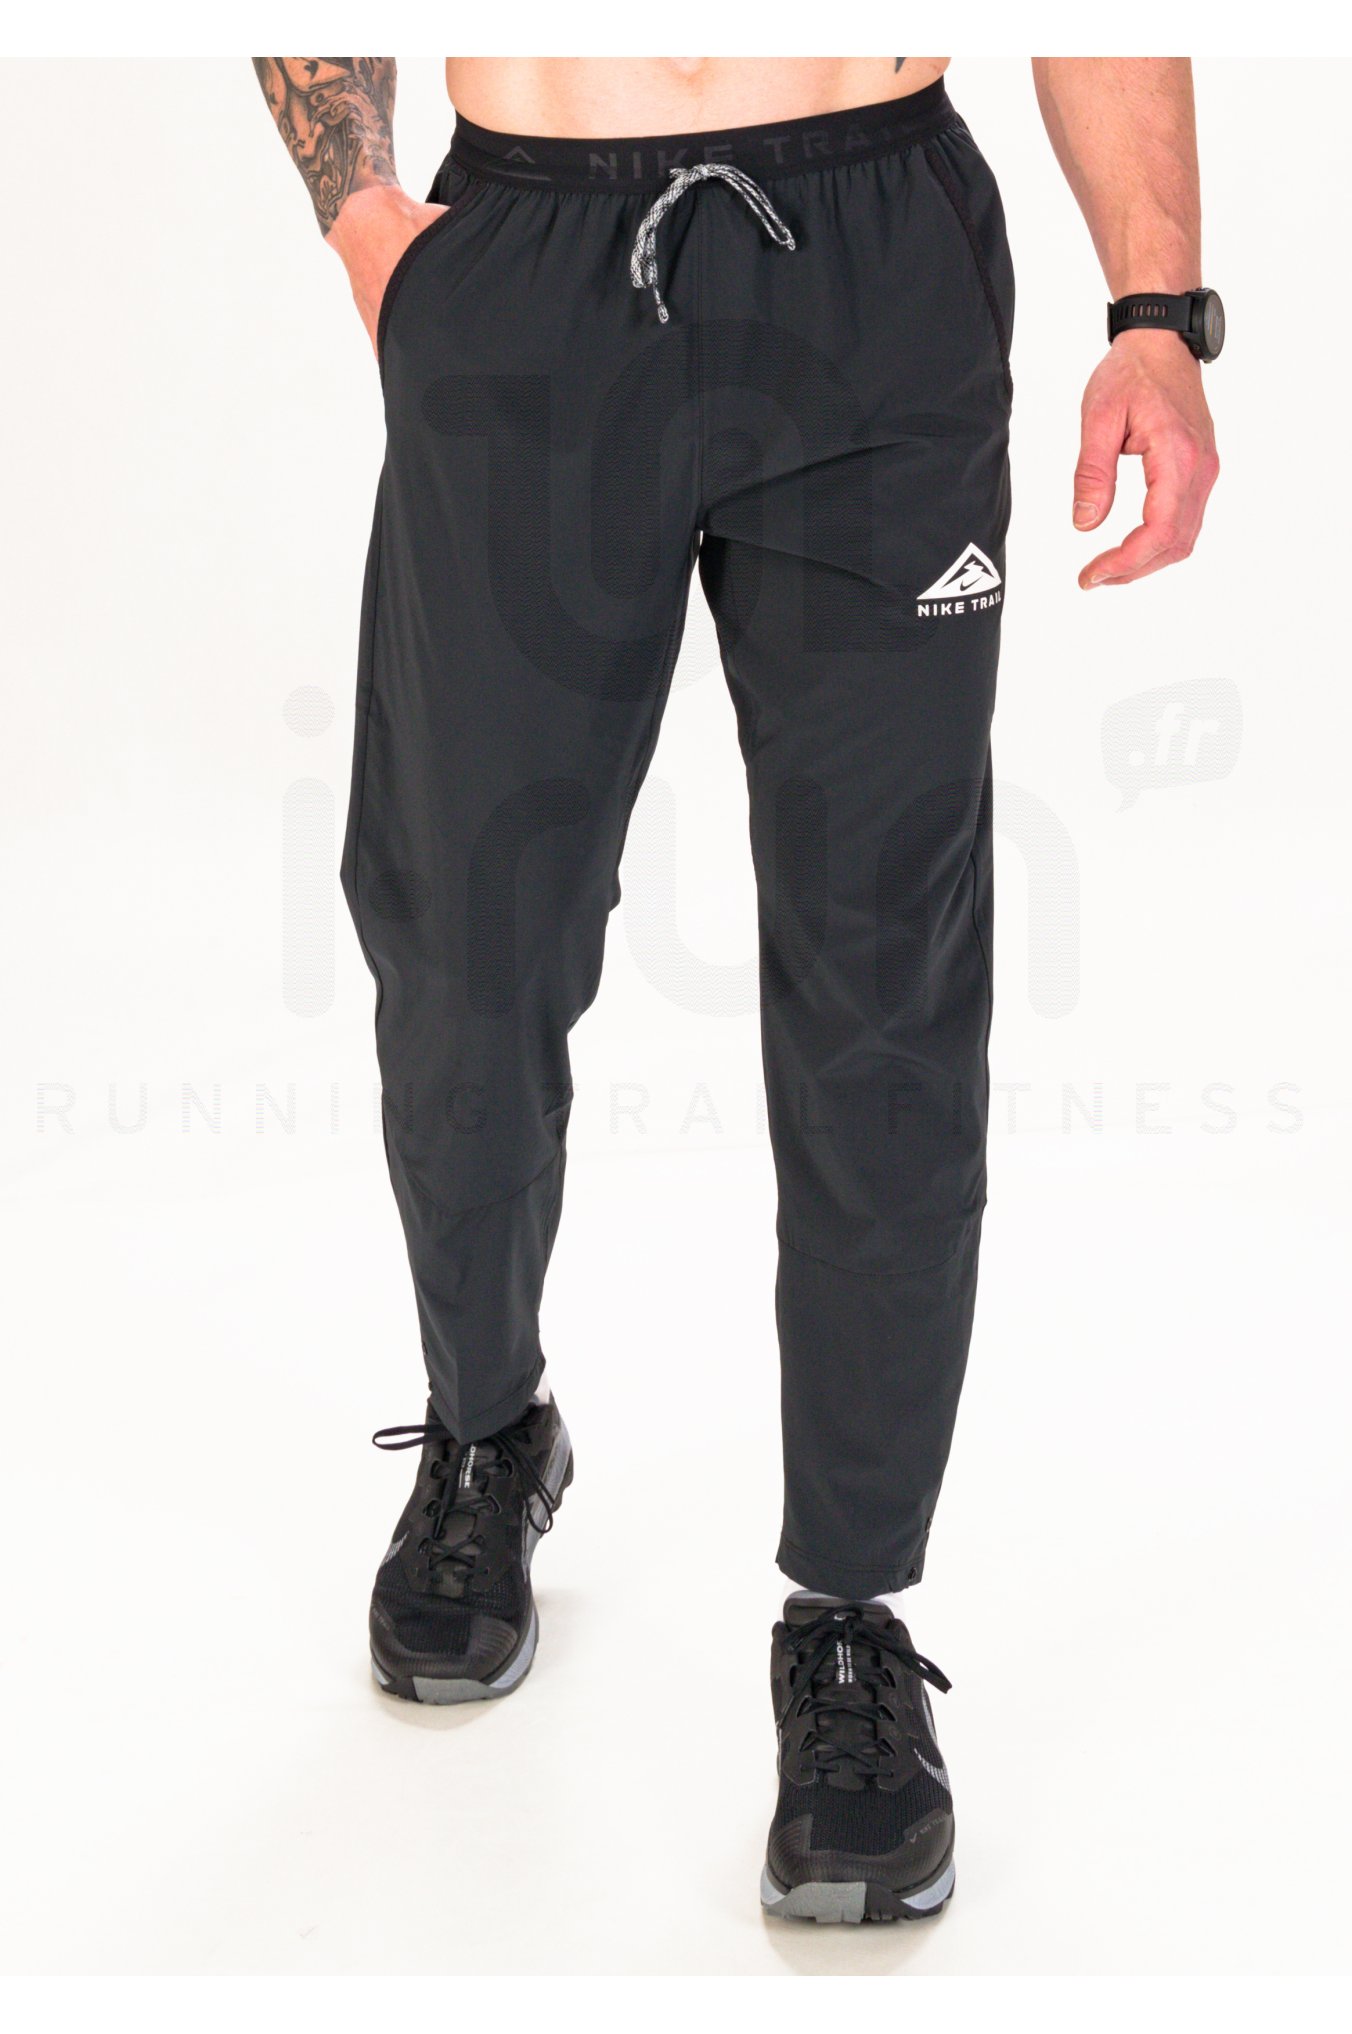 Hommes sport sueur pantalons baggy jogging Training pantalons Noir